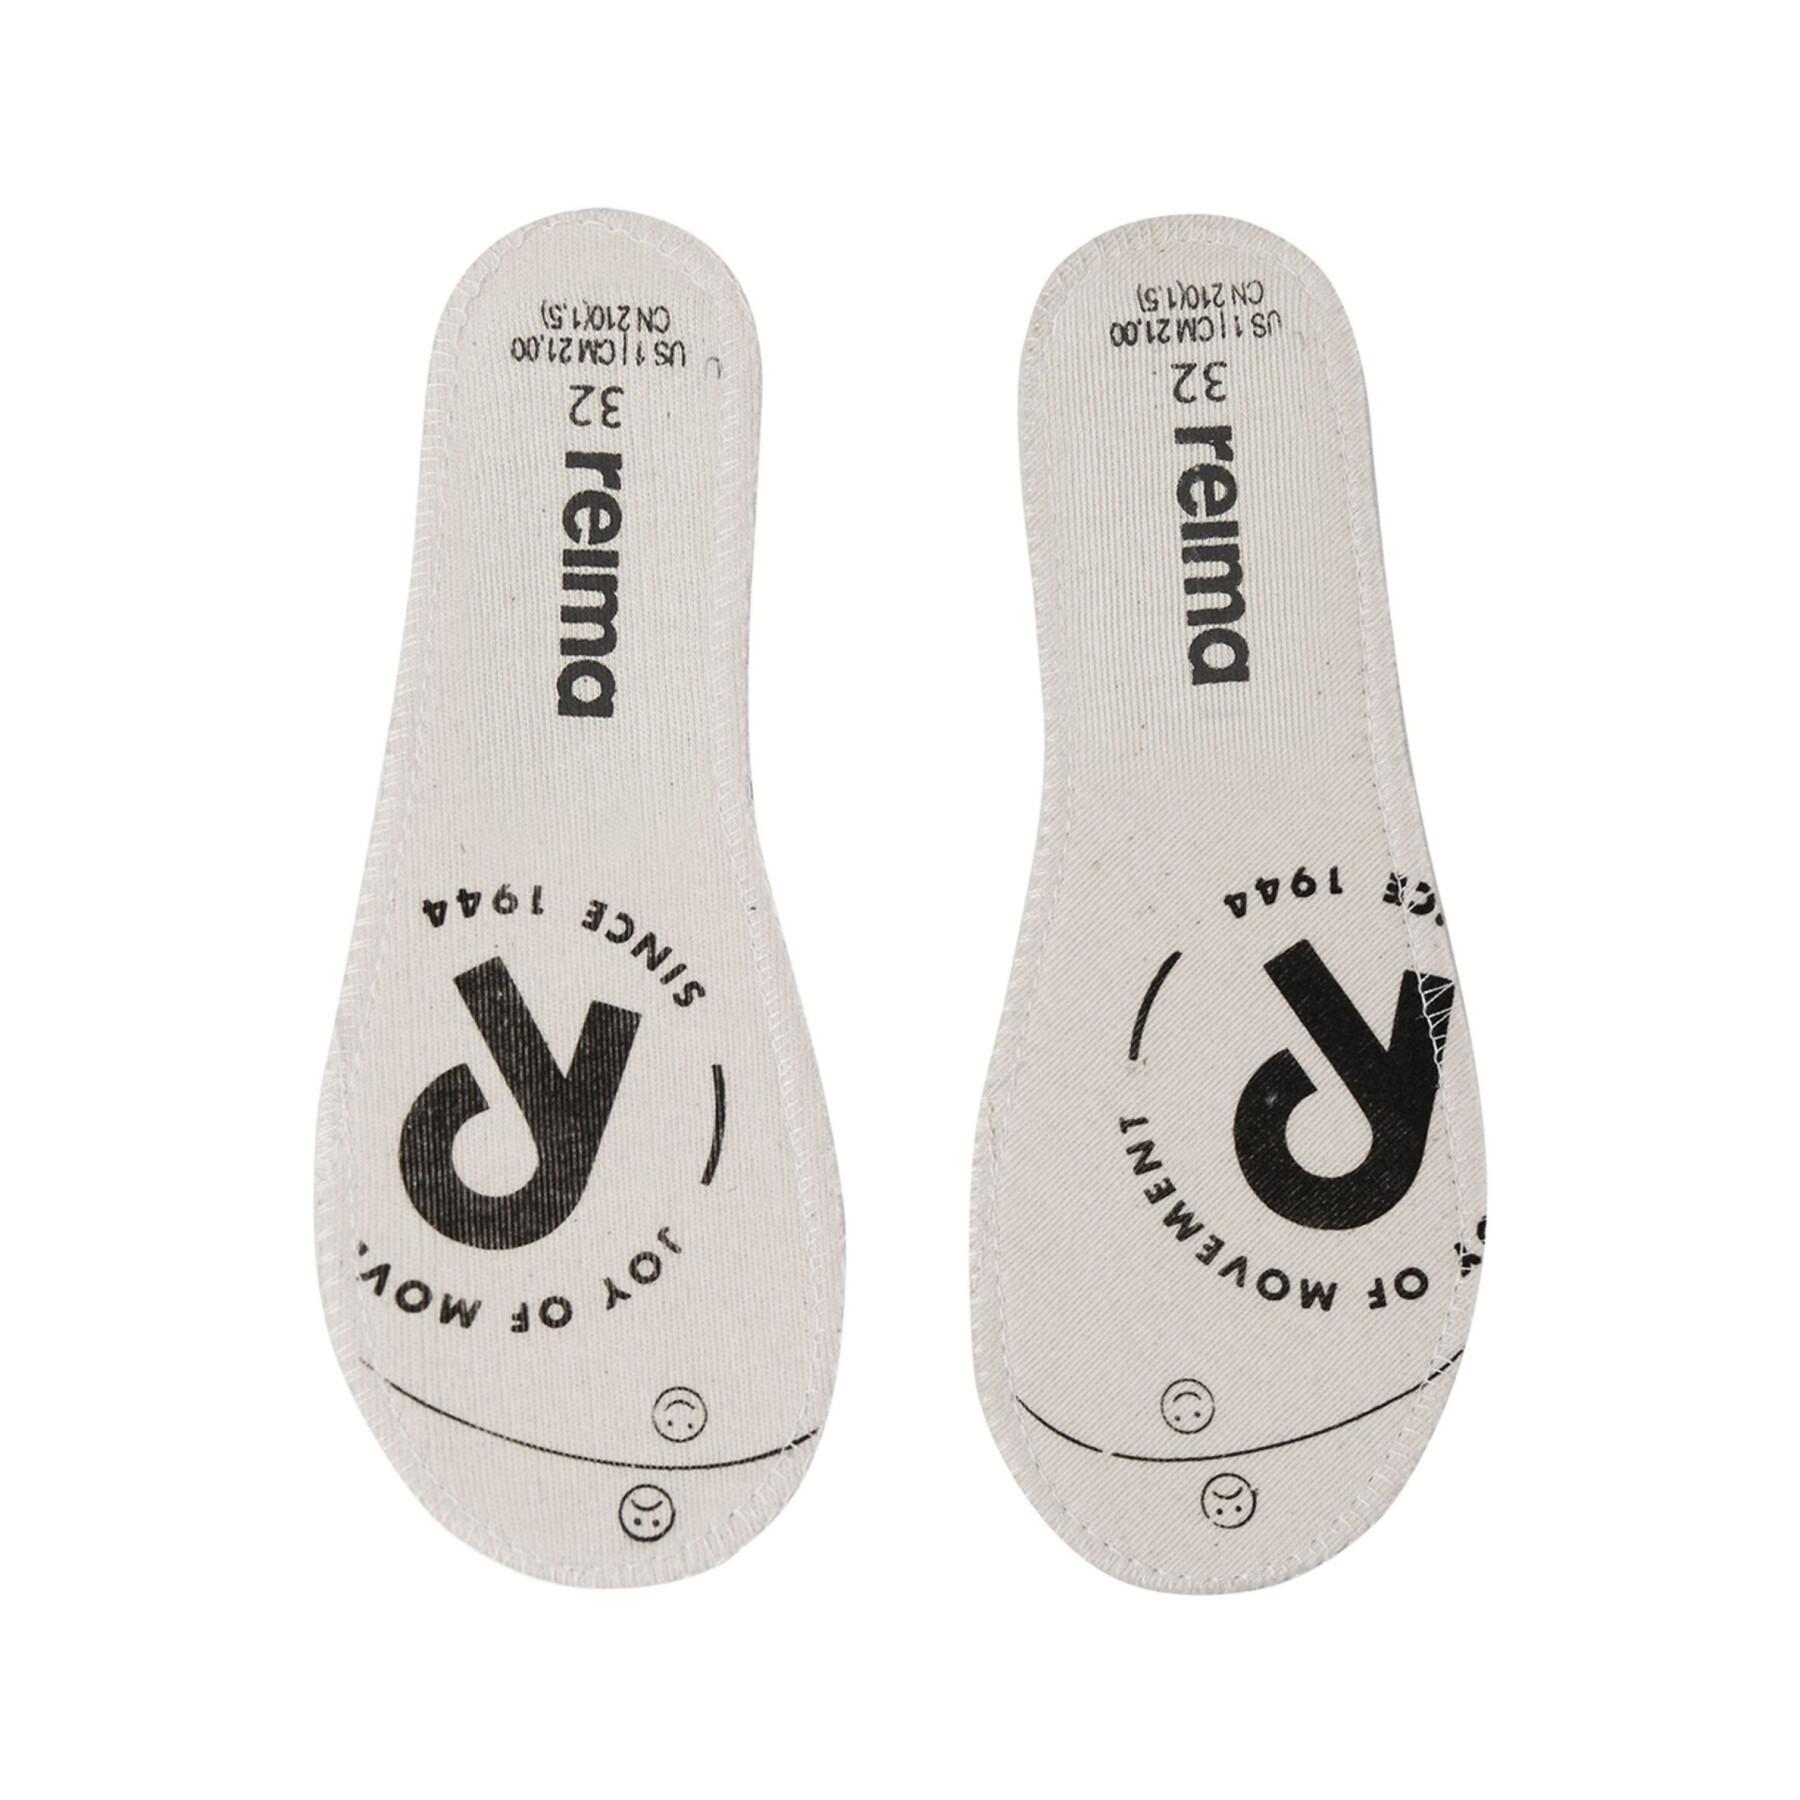 Gummistiefel für Kinder Reima Ankles